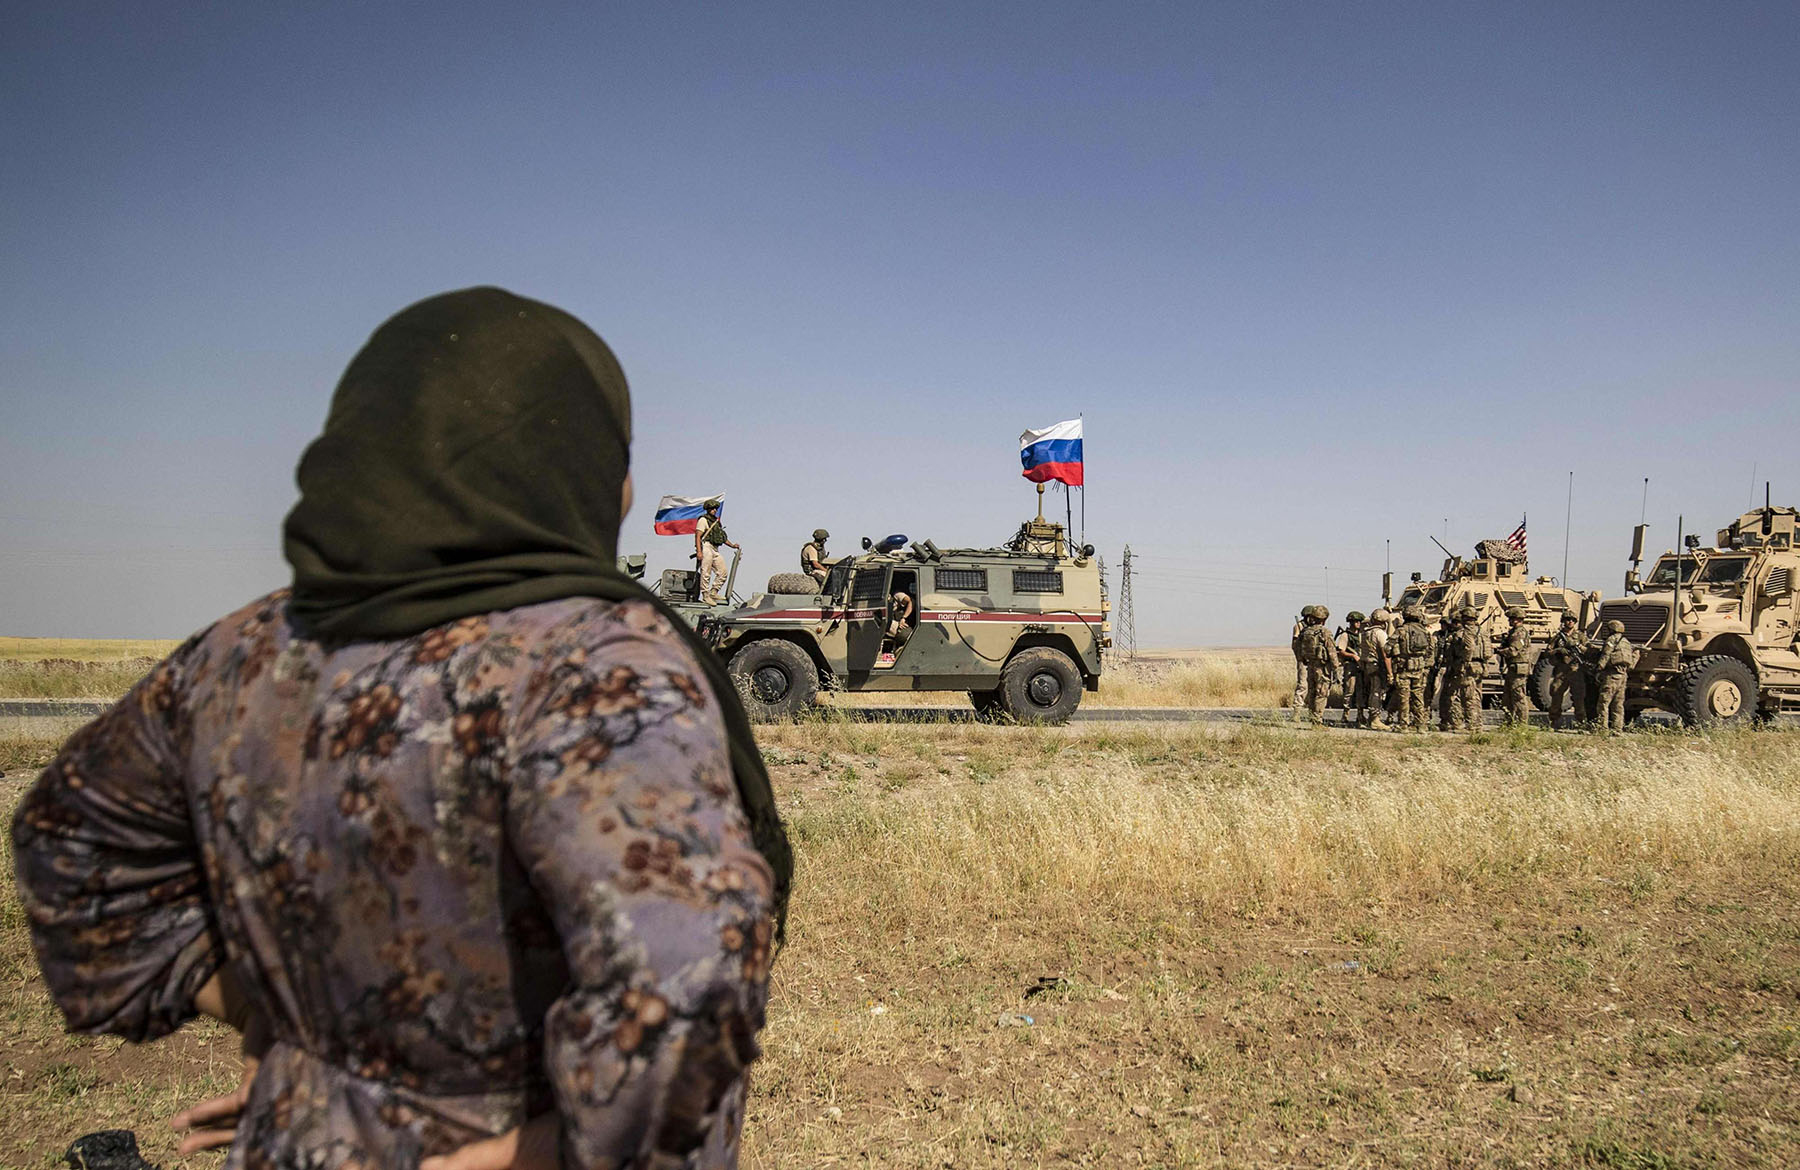 على ارض سوريا قوات اميركية وروسية وتركية وايرانية 'لن تسمح بانتصار أي طرف'